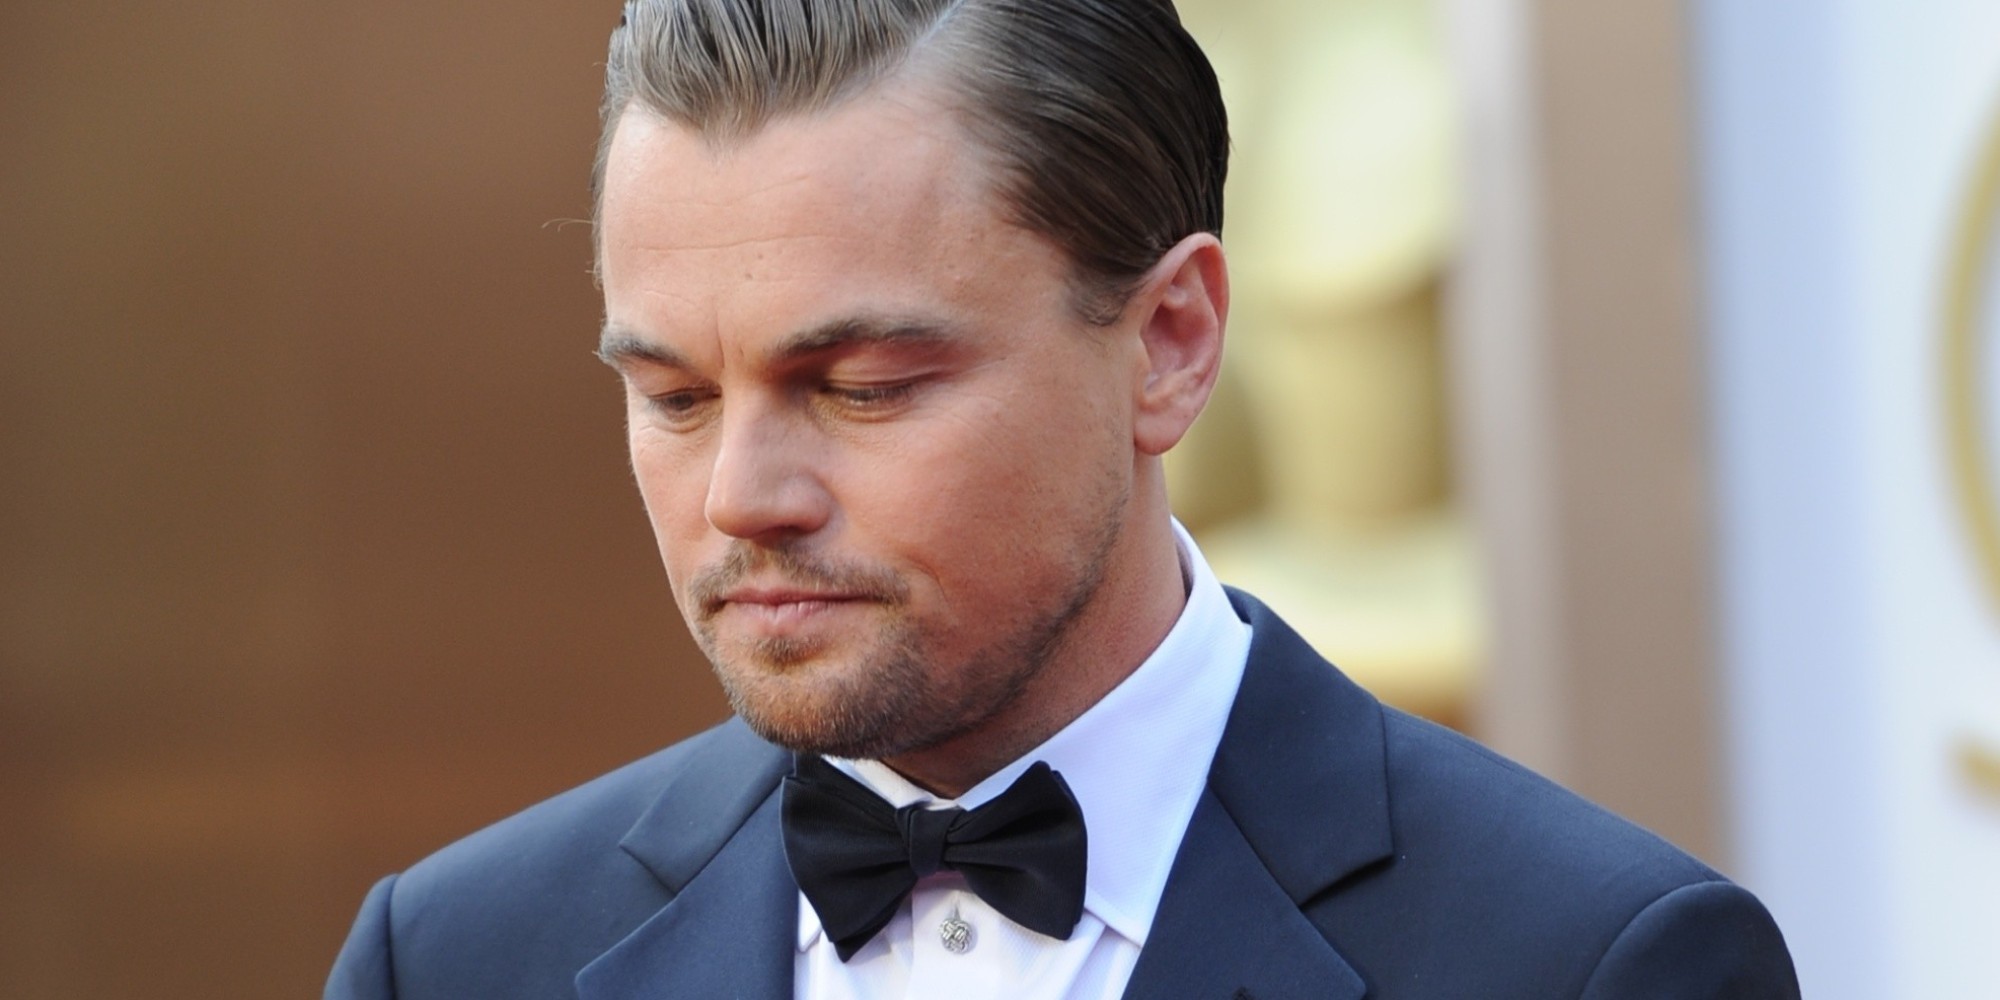 Actorul Leonardo DiCaprio investeşte într-o companie de încălţăminte. Ce l-a determinat să ia această decizie